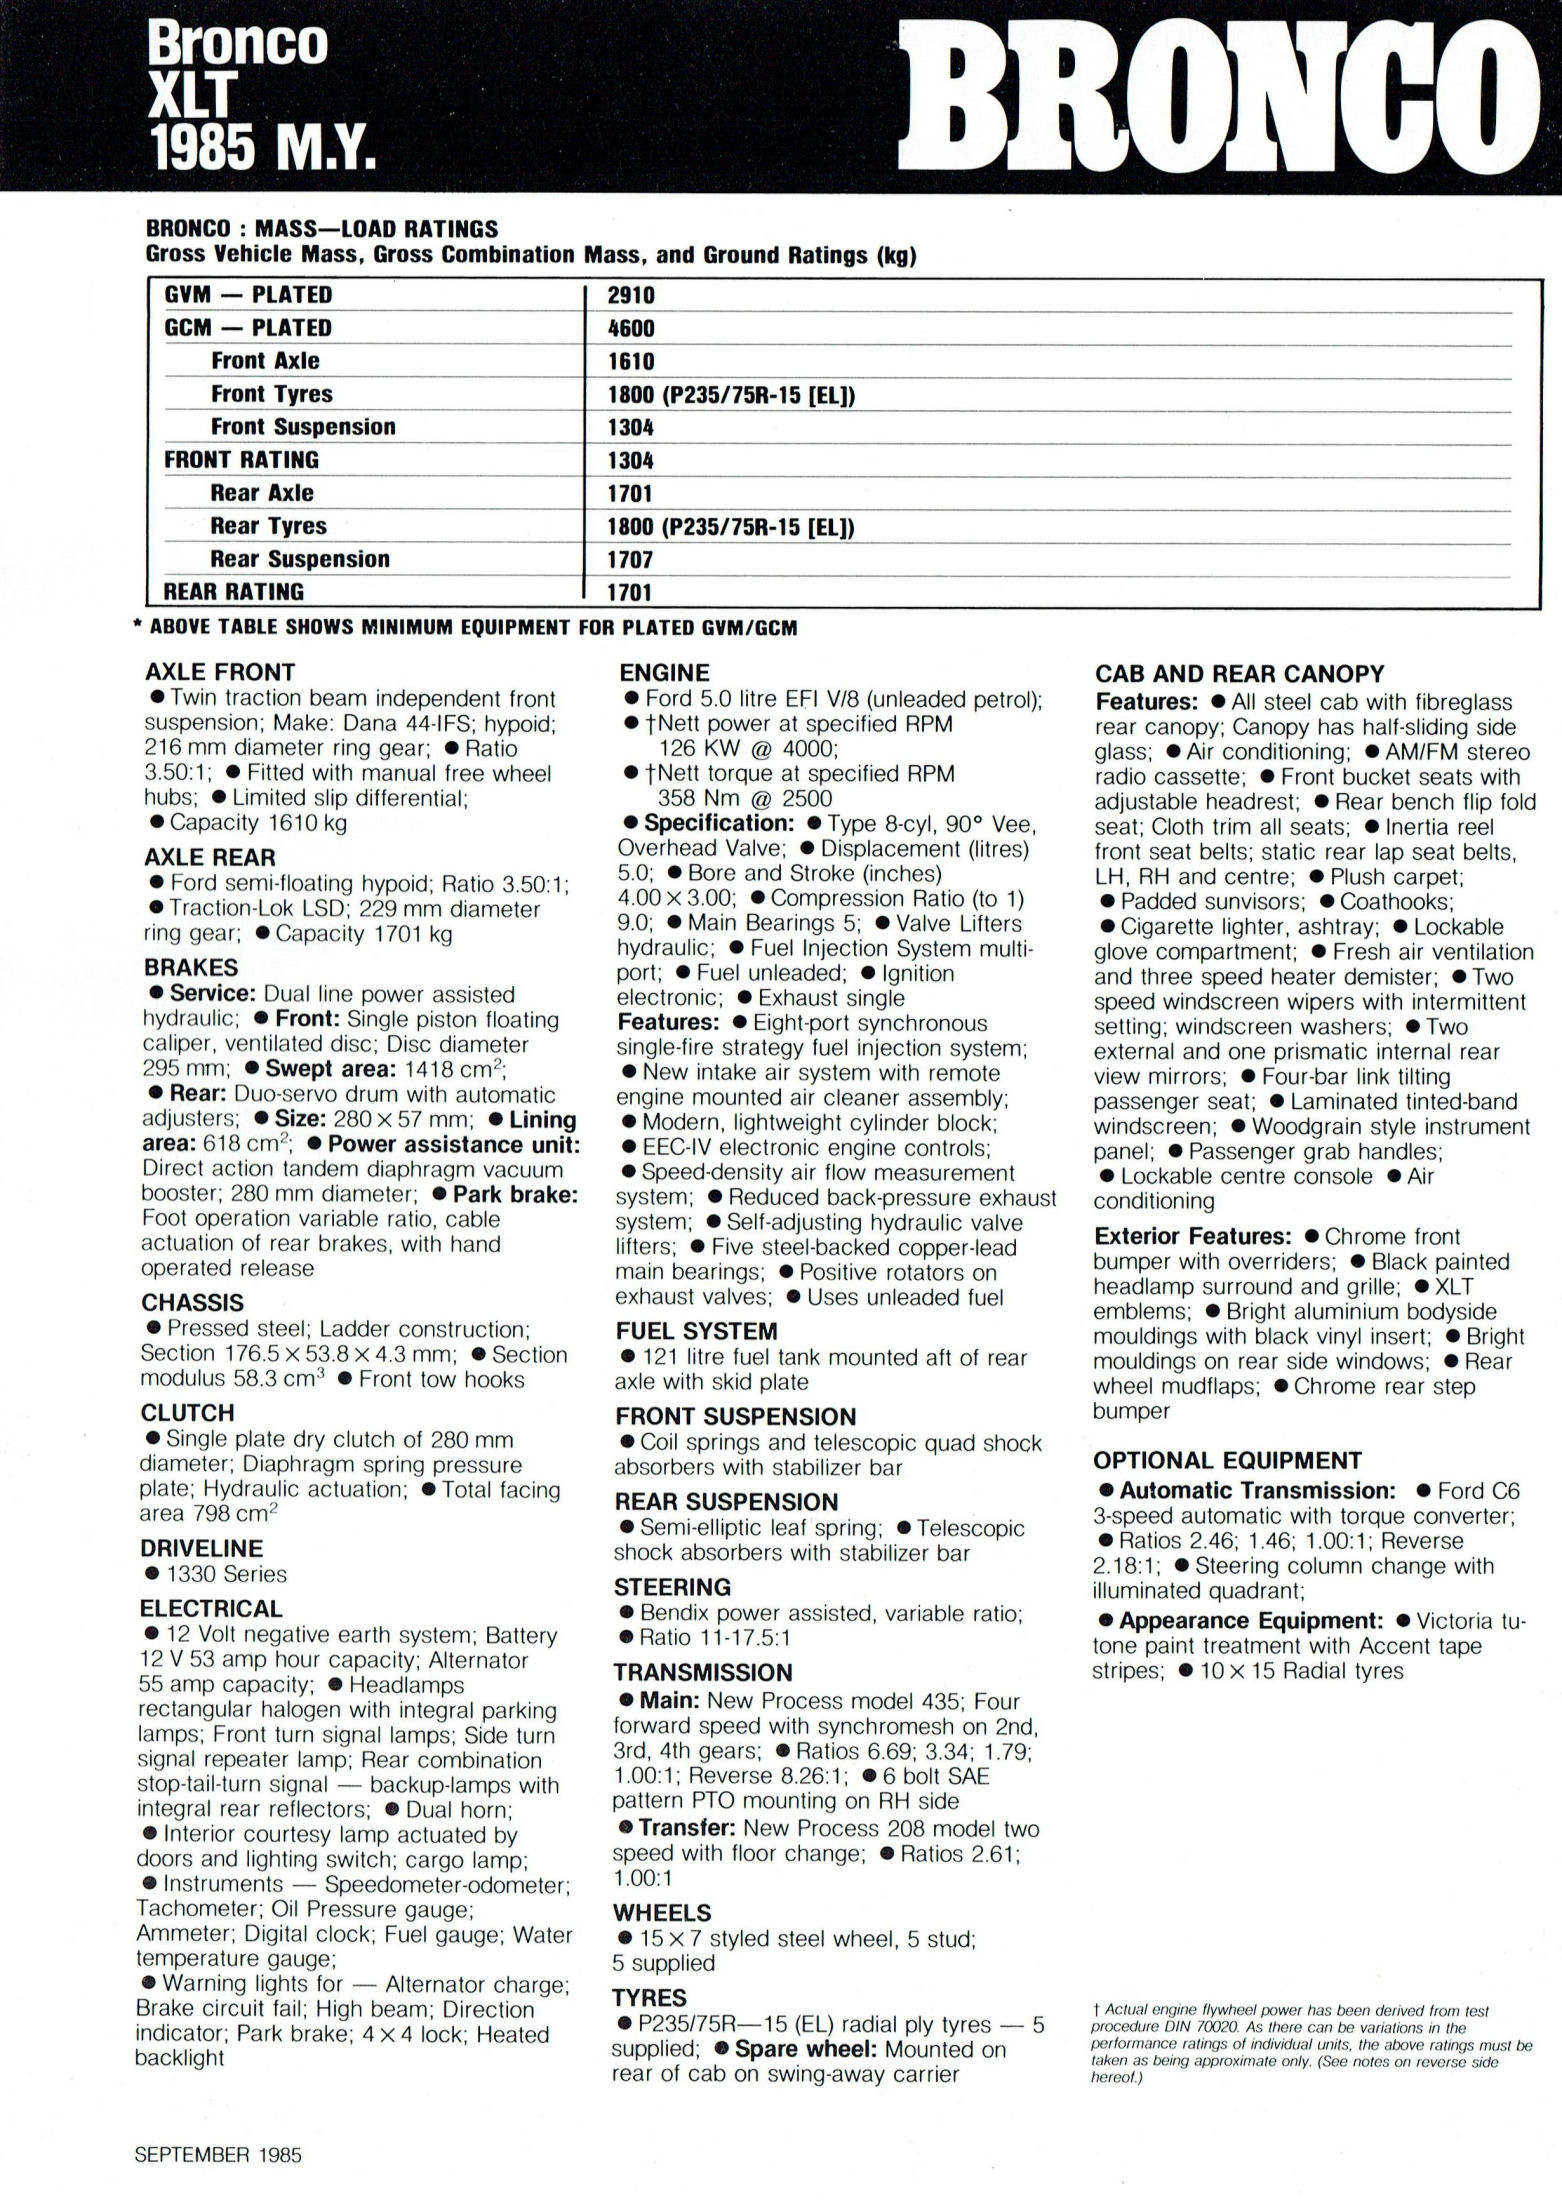 1985 Ford Truck Data Sheet (Aus)-02